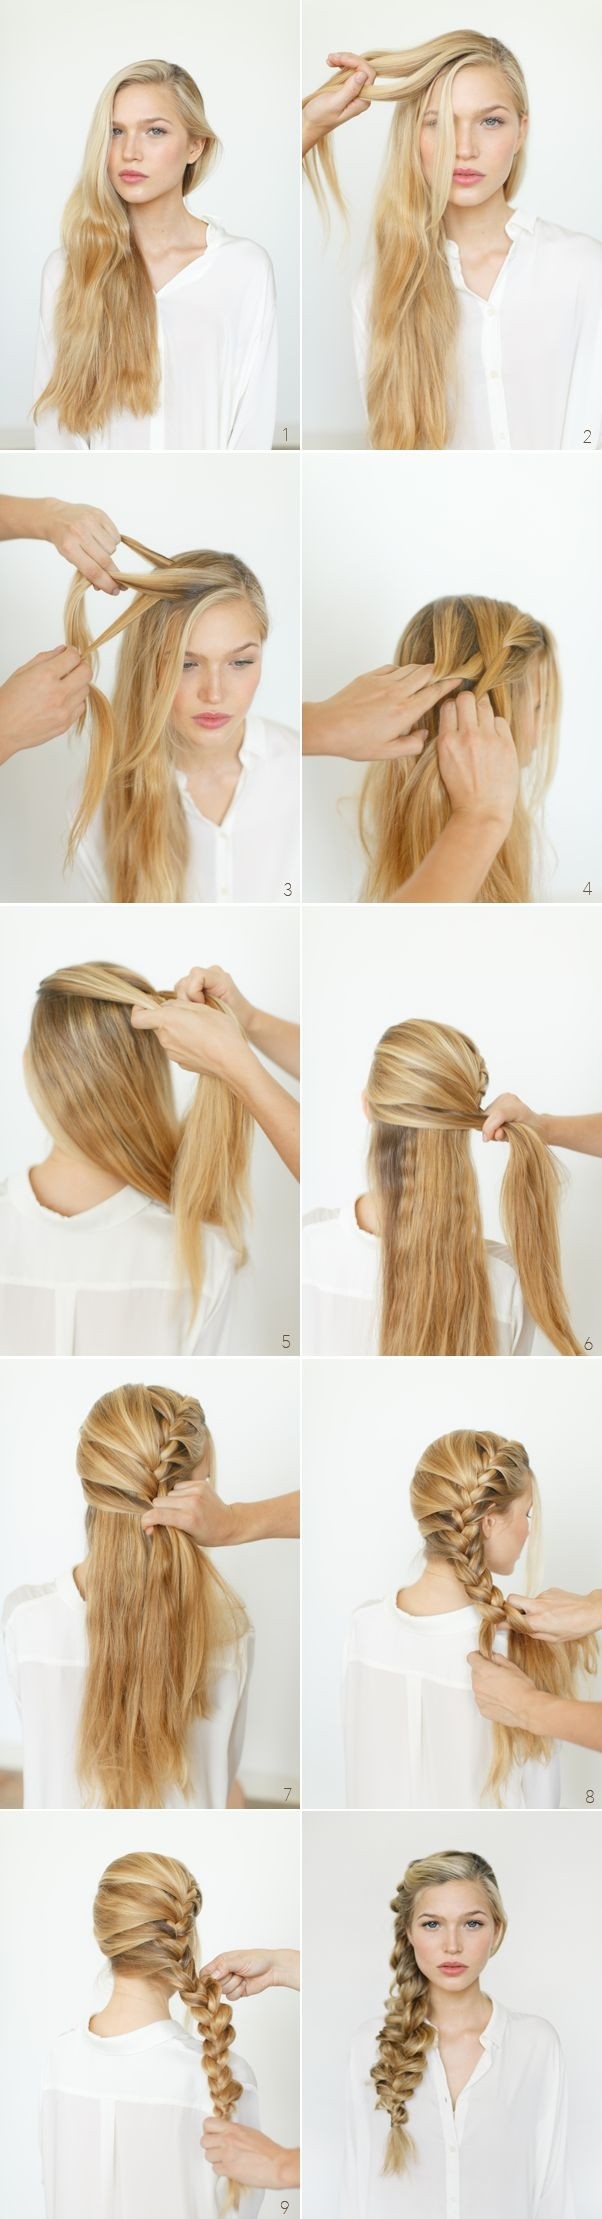 8 Cute Braided Hairstyles For Girls Long Hair Ideas PoPular Haircuts